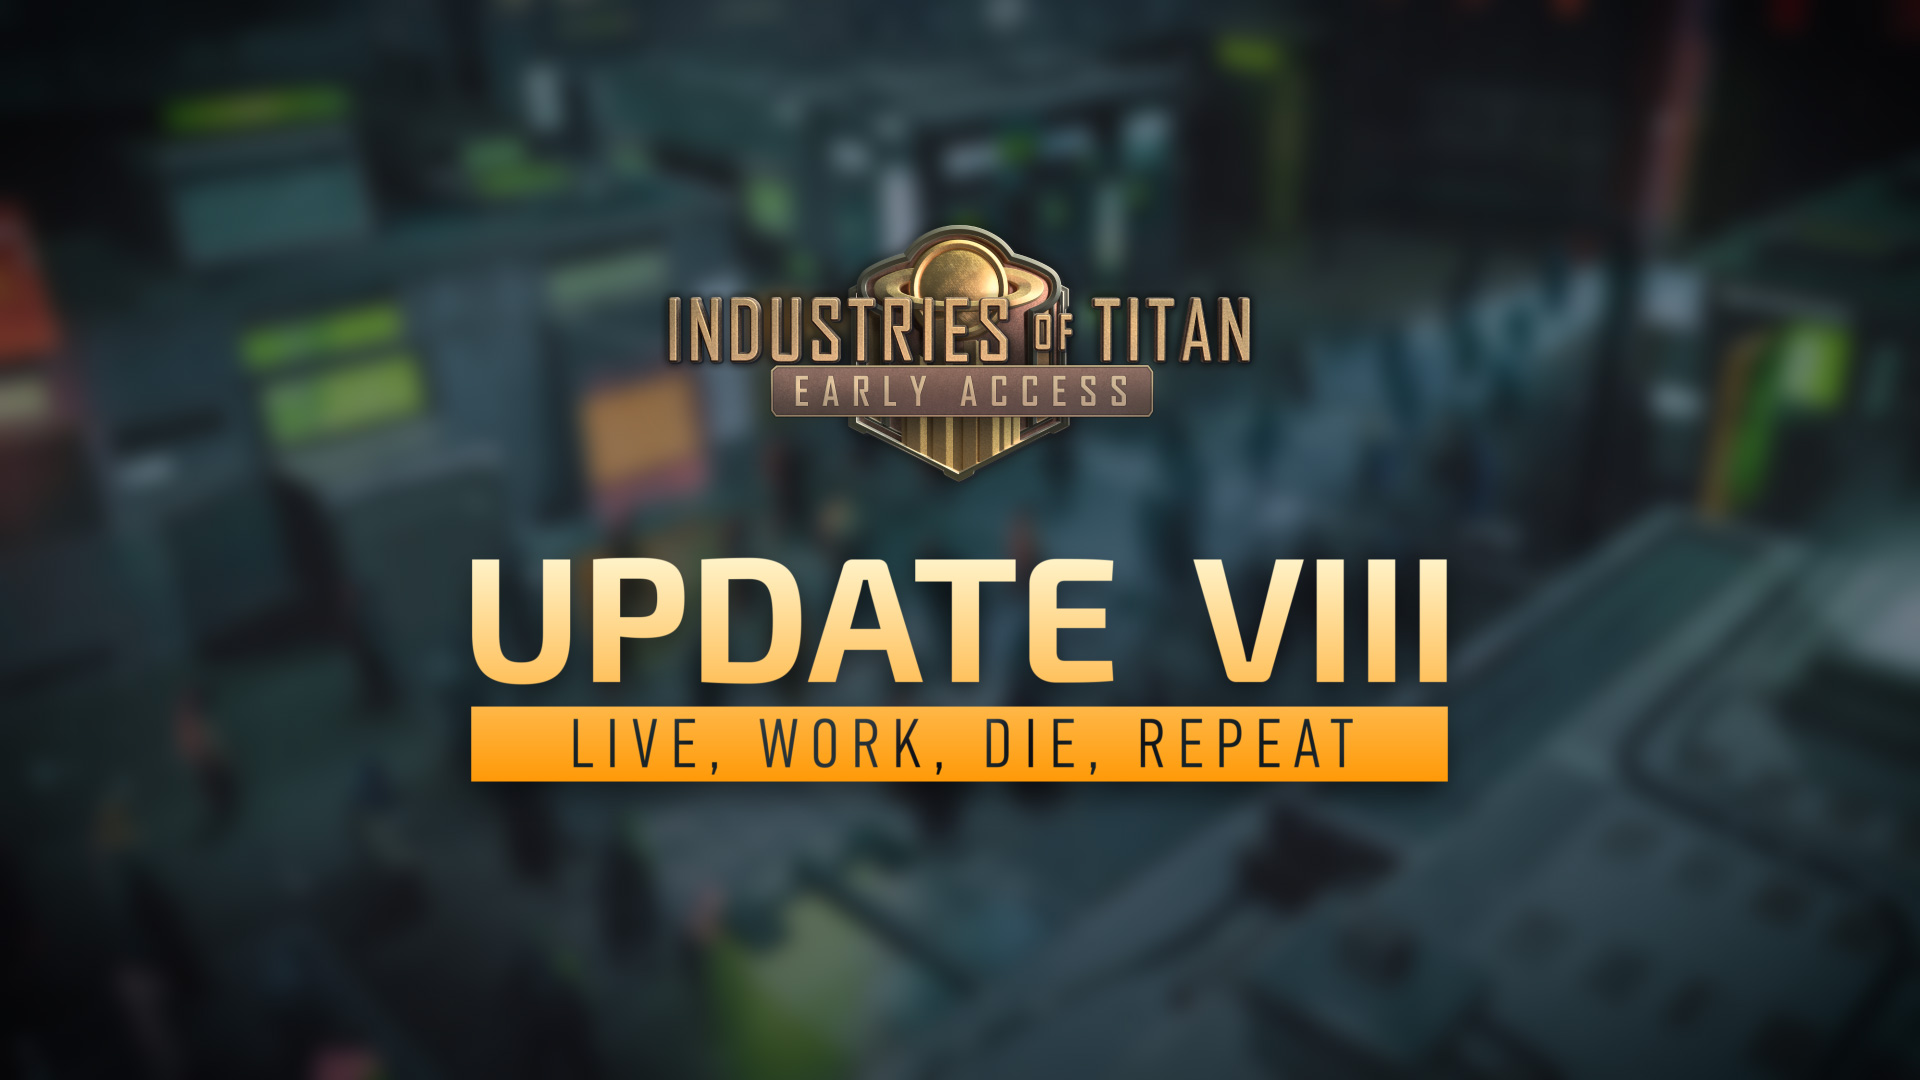 Industries of Titan Update 8: Live, Die, Work, Repeat